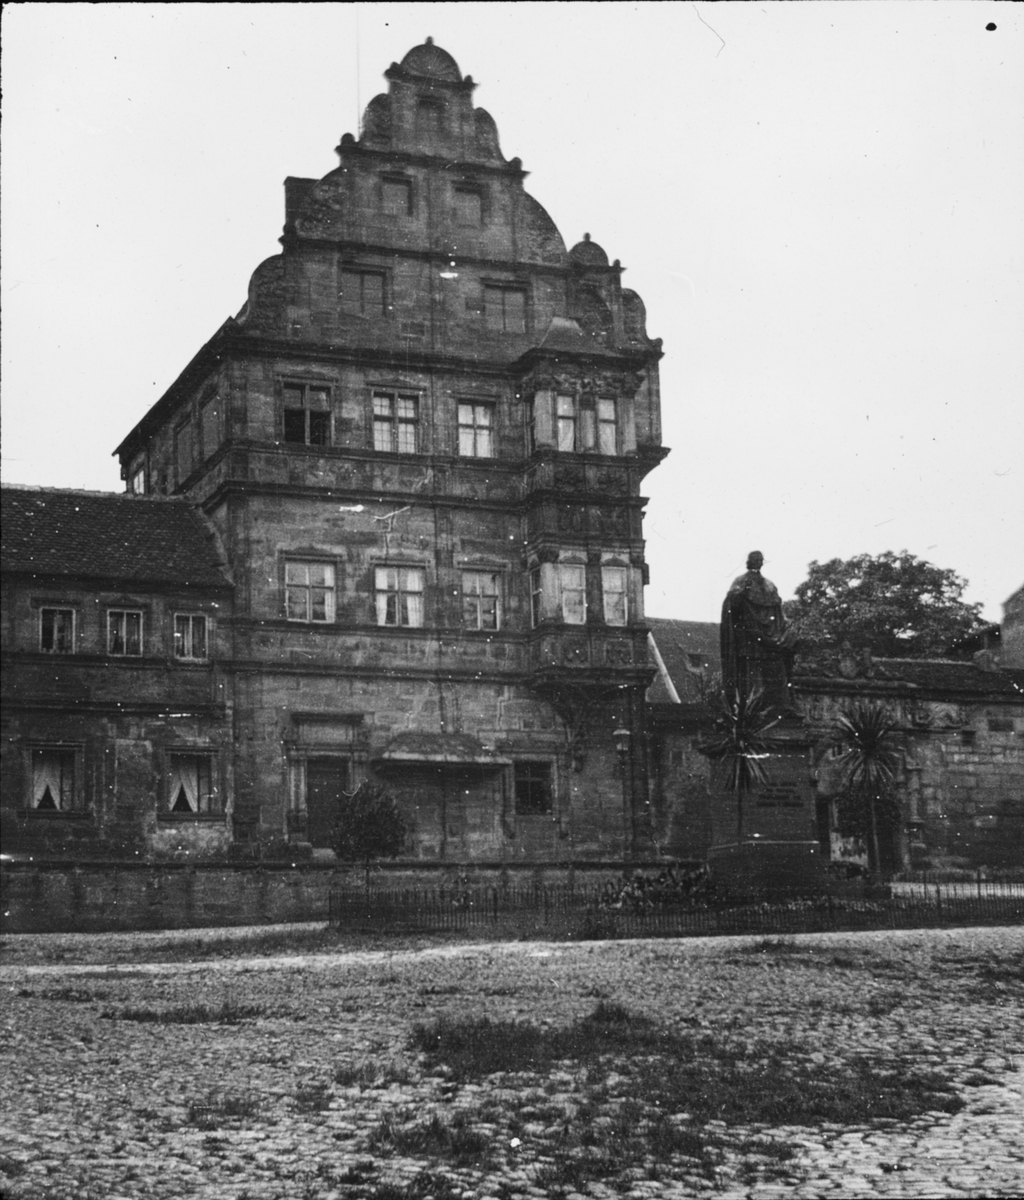 Skioptikonbild med motiv av Alte Hofhaltung, gamla domstolen i Bamberg.
Bilden har förvarats i kartong märkt: Resan 1906. Bamberg 8.